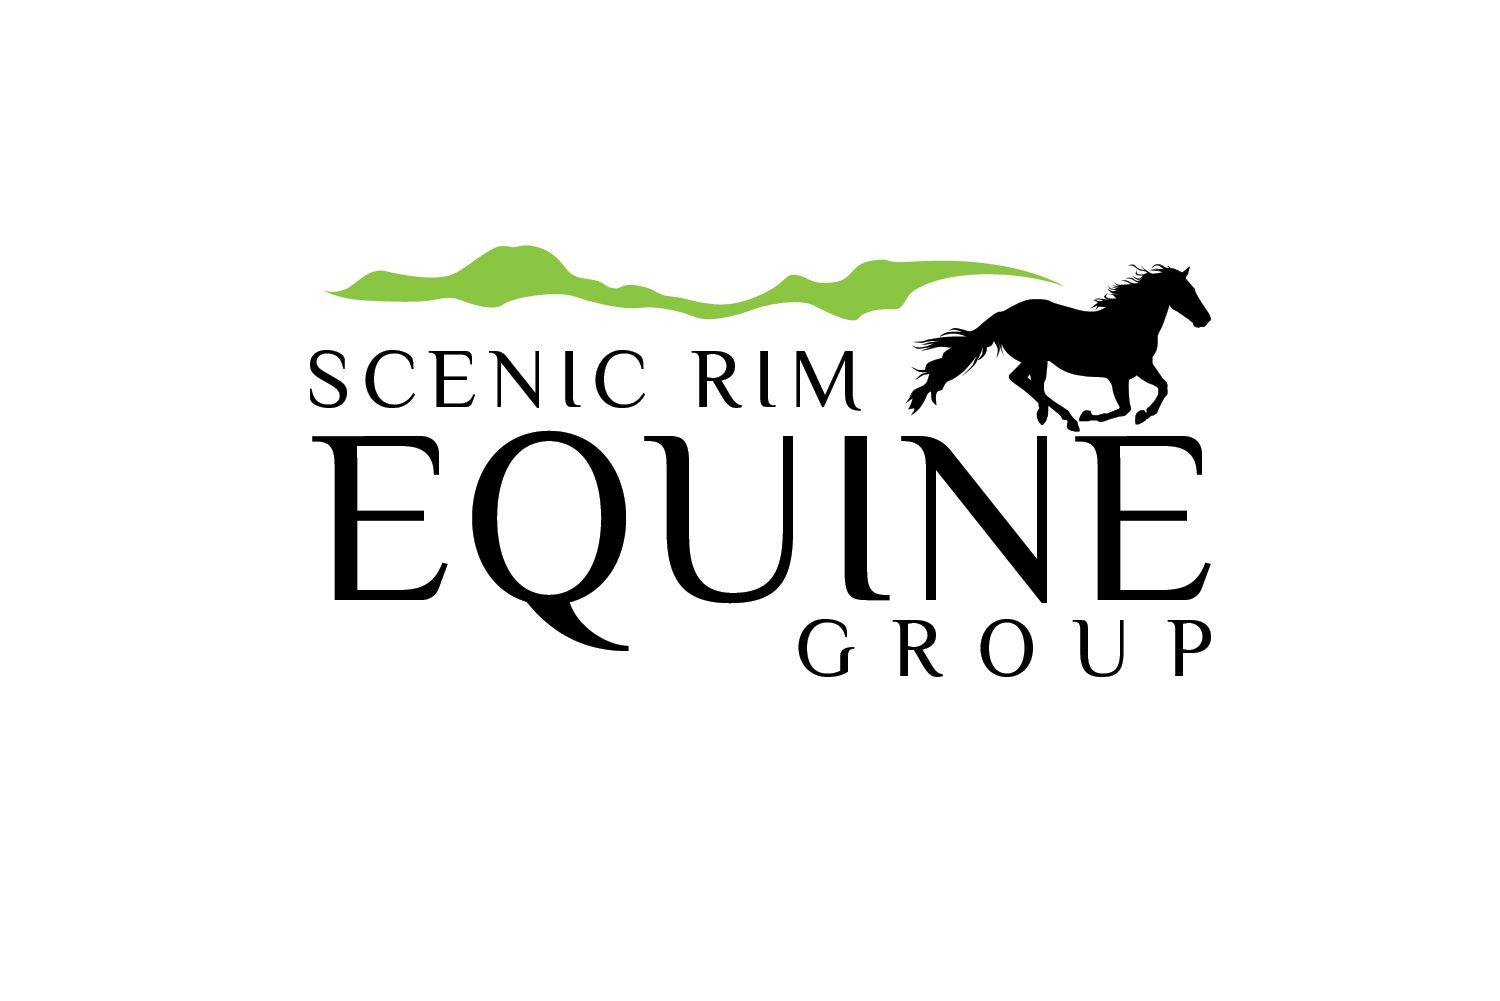 Horse Business Logo - Modern, Upmarket, Business Logo Design for Scenic Rim Equine Group ...